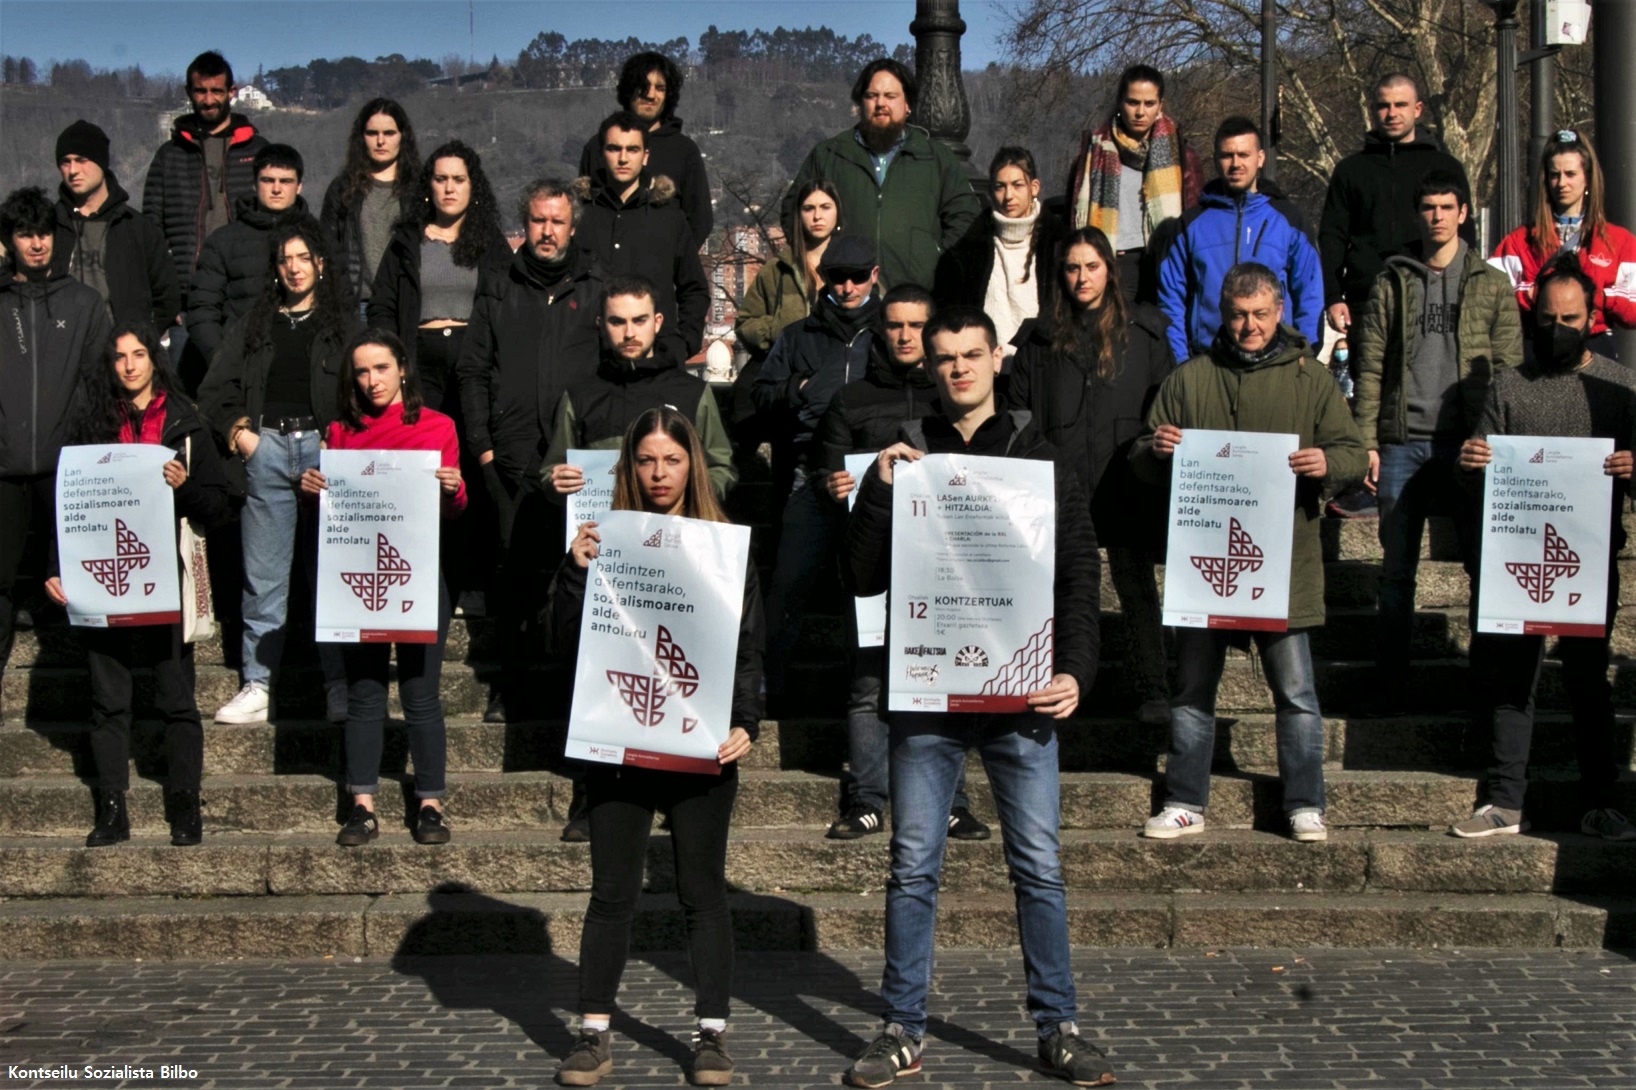 Red-Autodefensa-Laboral-proletariado-burguesía-Kontseilu-Sozialista-Bilbao